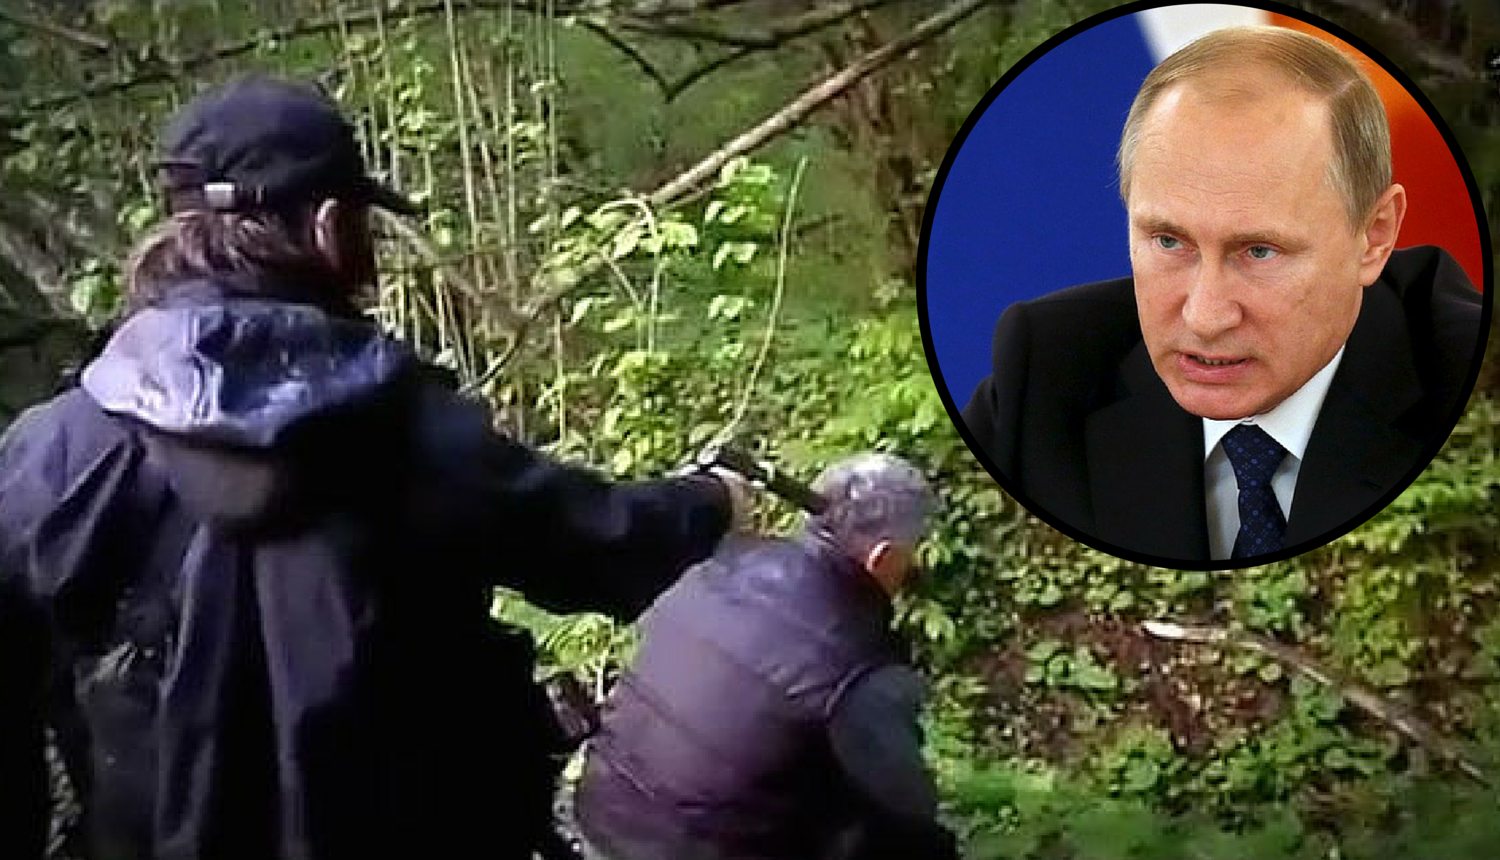 ISIL prijeti: "Putine, ubili smo tvog špijuna, a ti si sljedeći!"